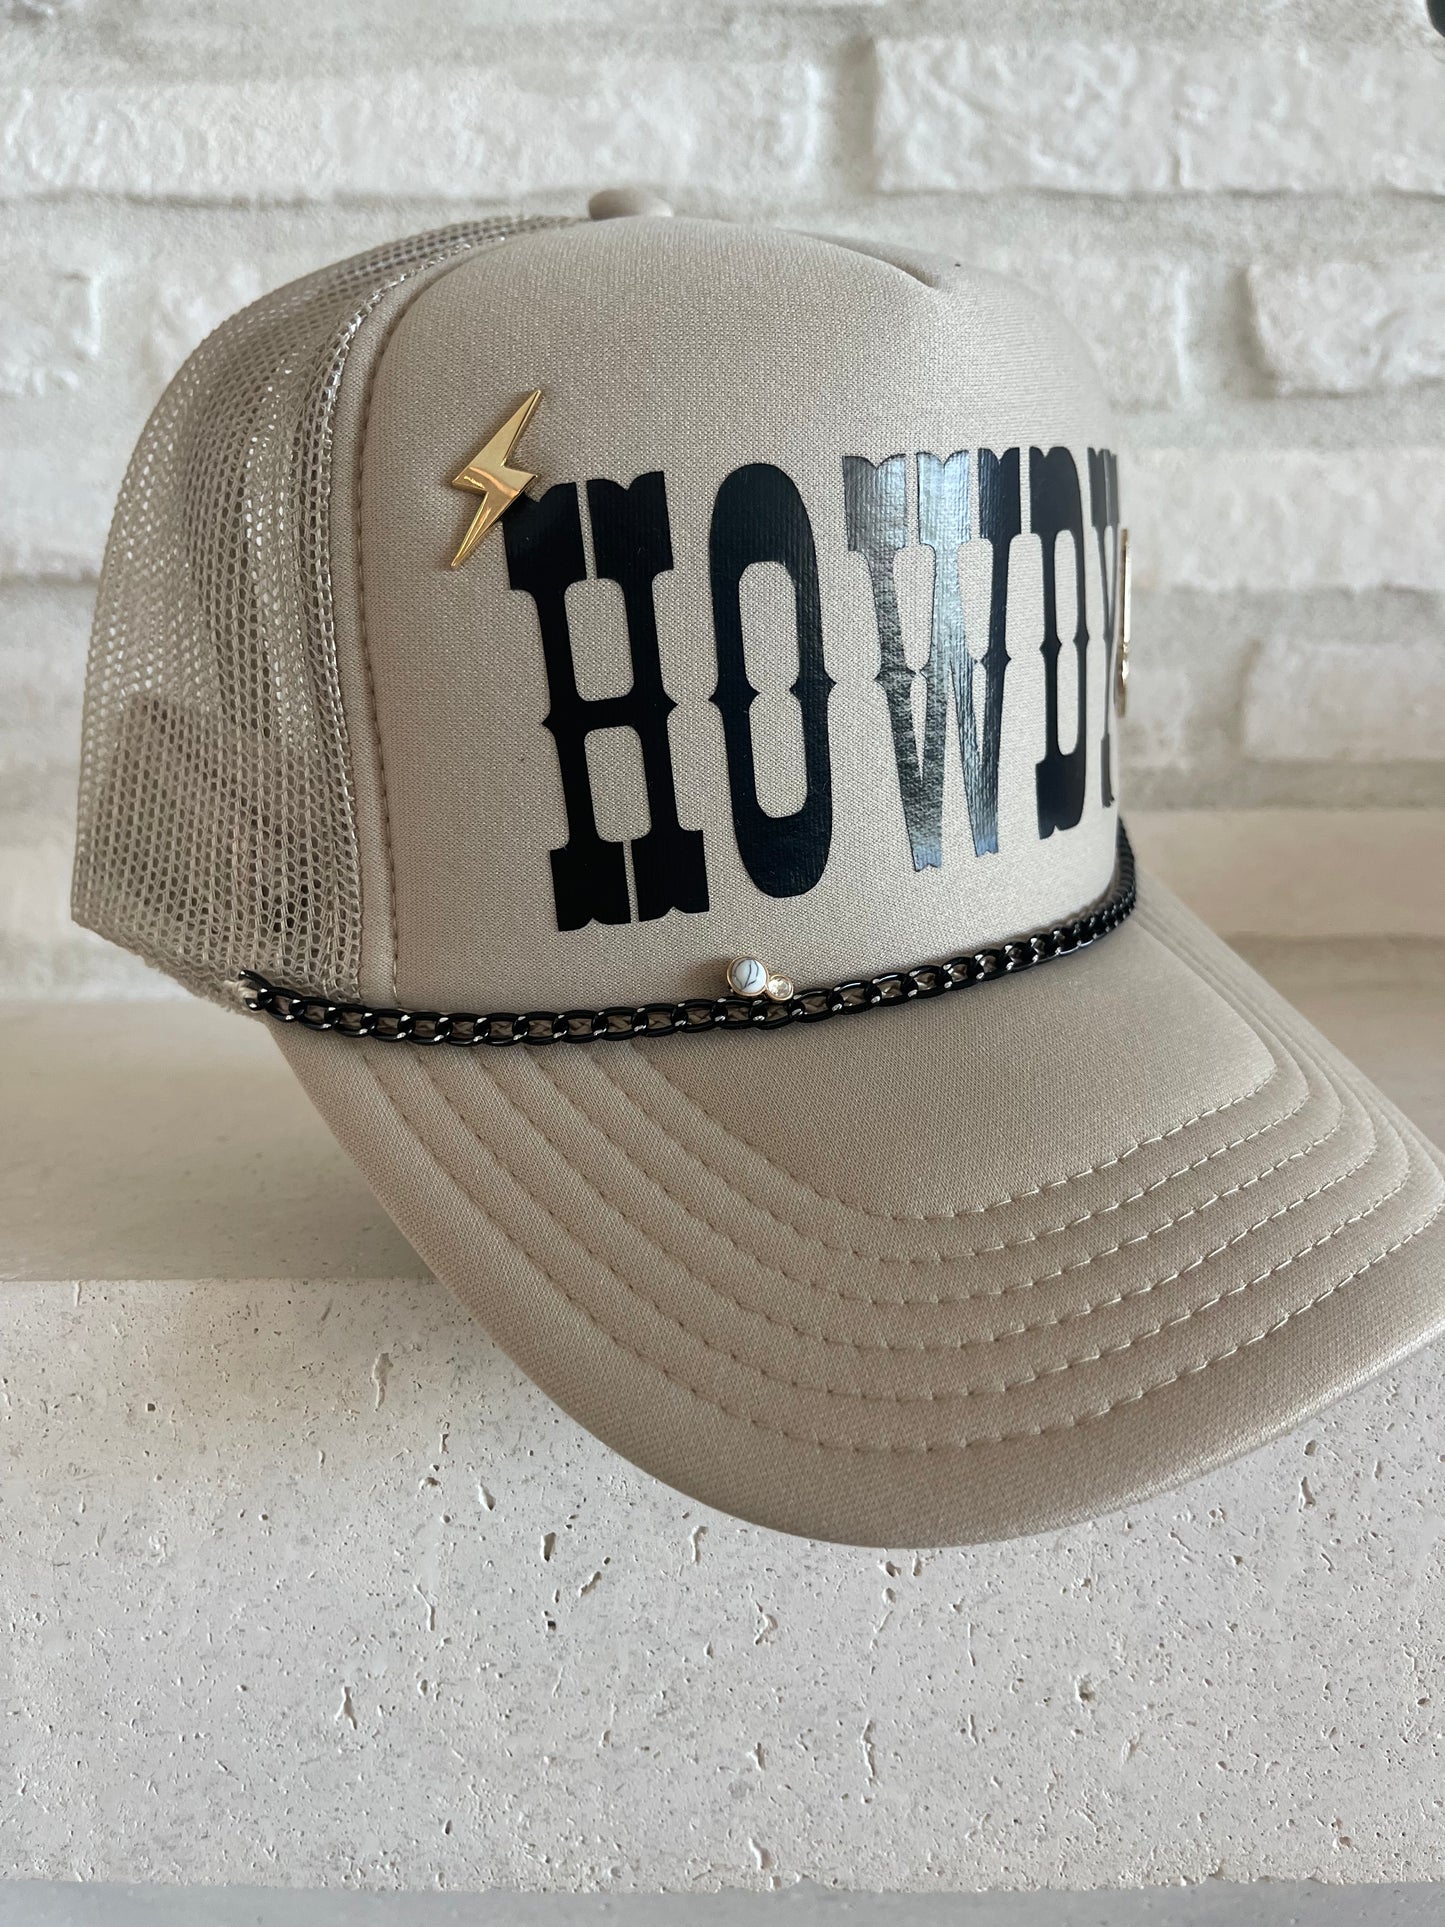 howdy trucker hat customized